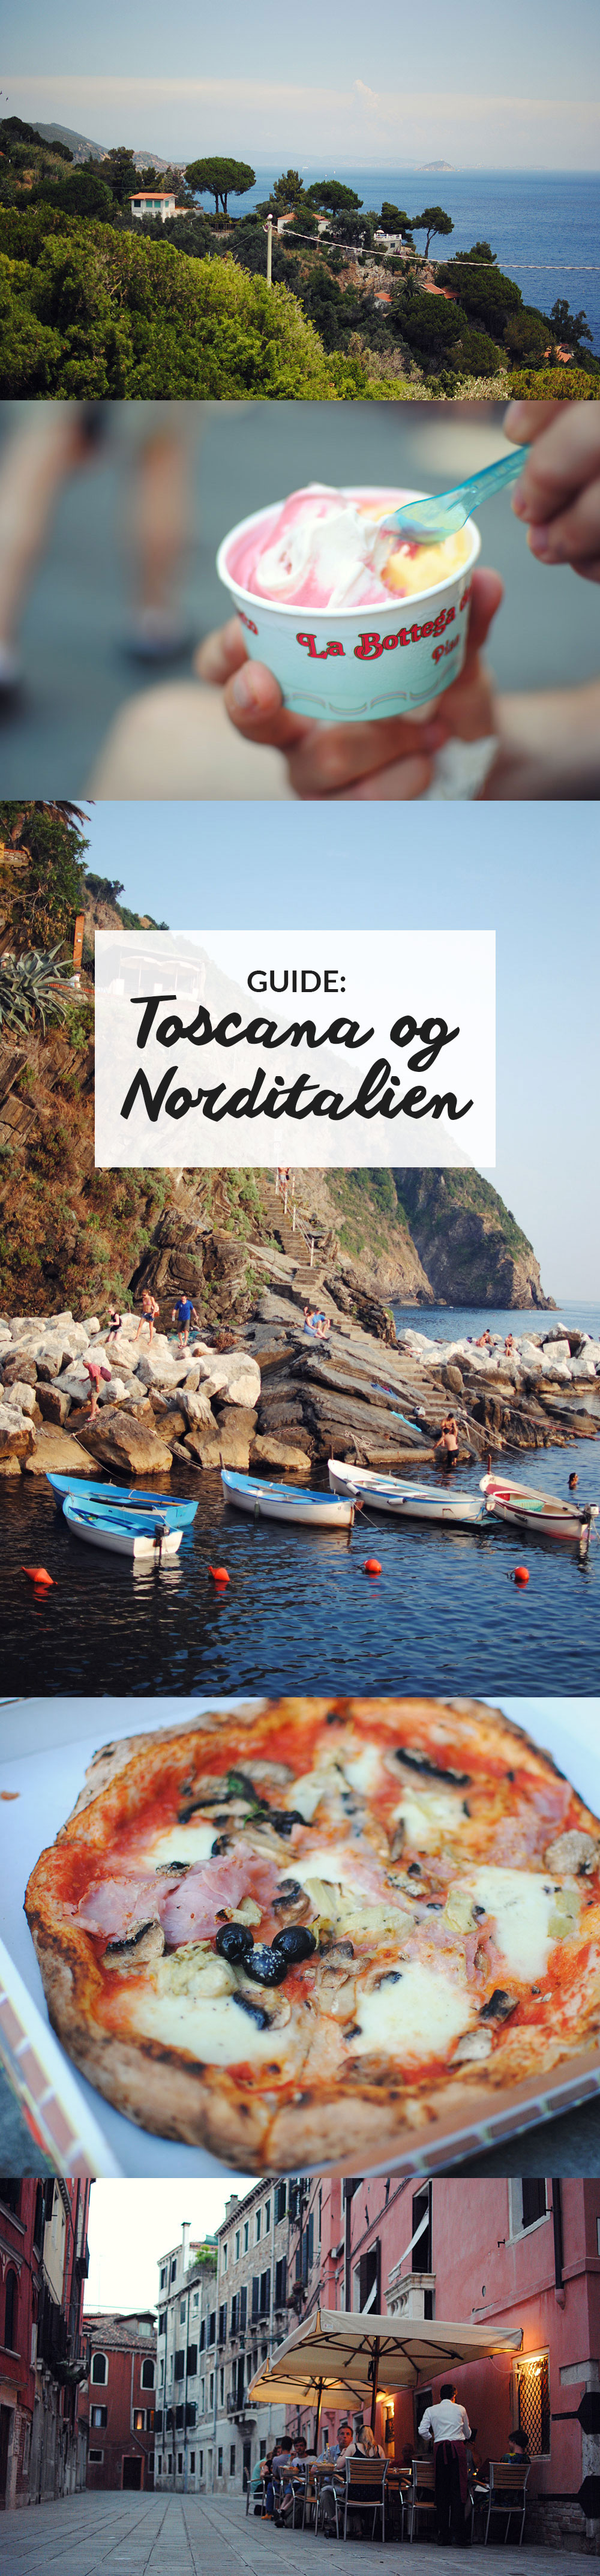 Guide til Toscana og Norditalien | Frk. Kræsen